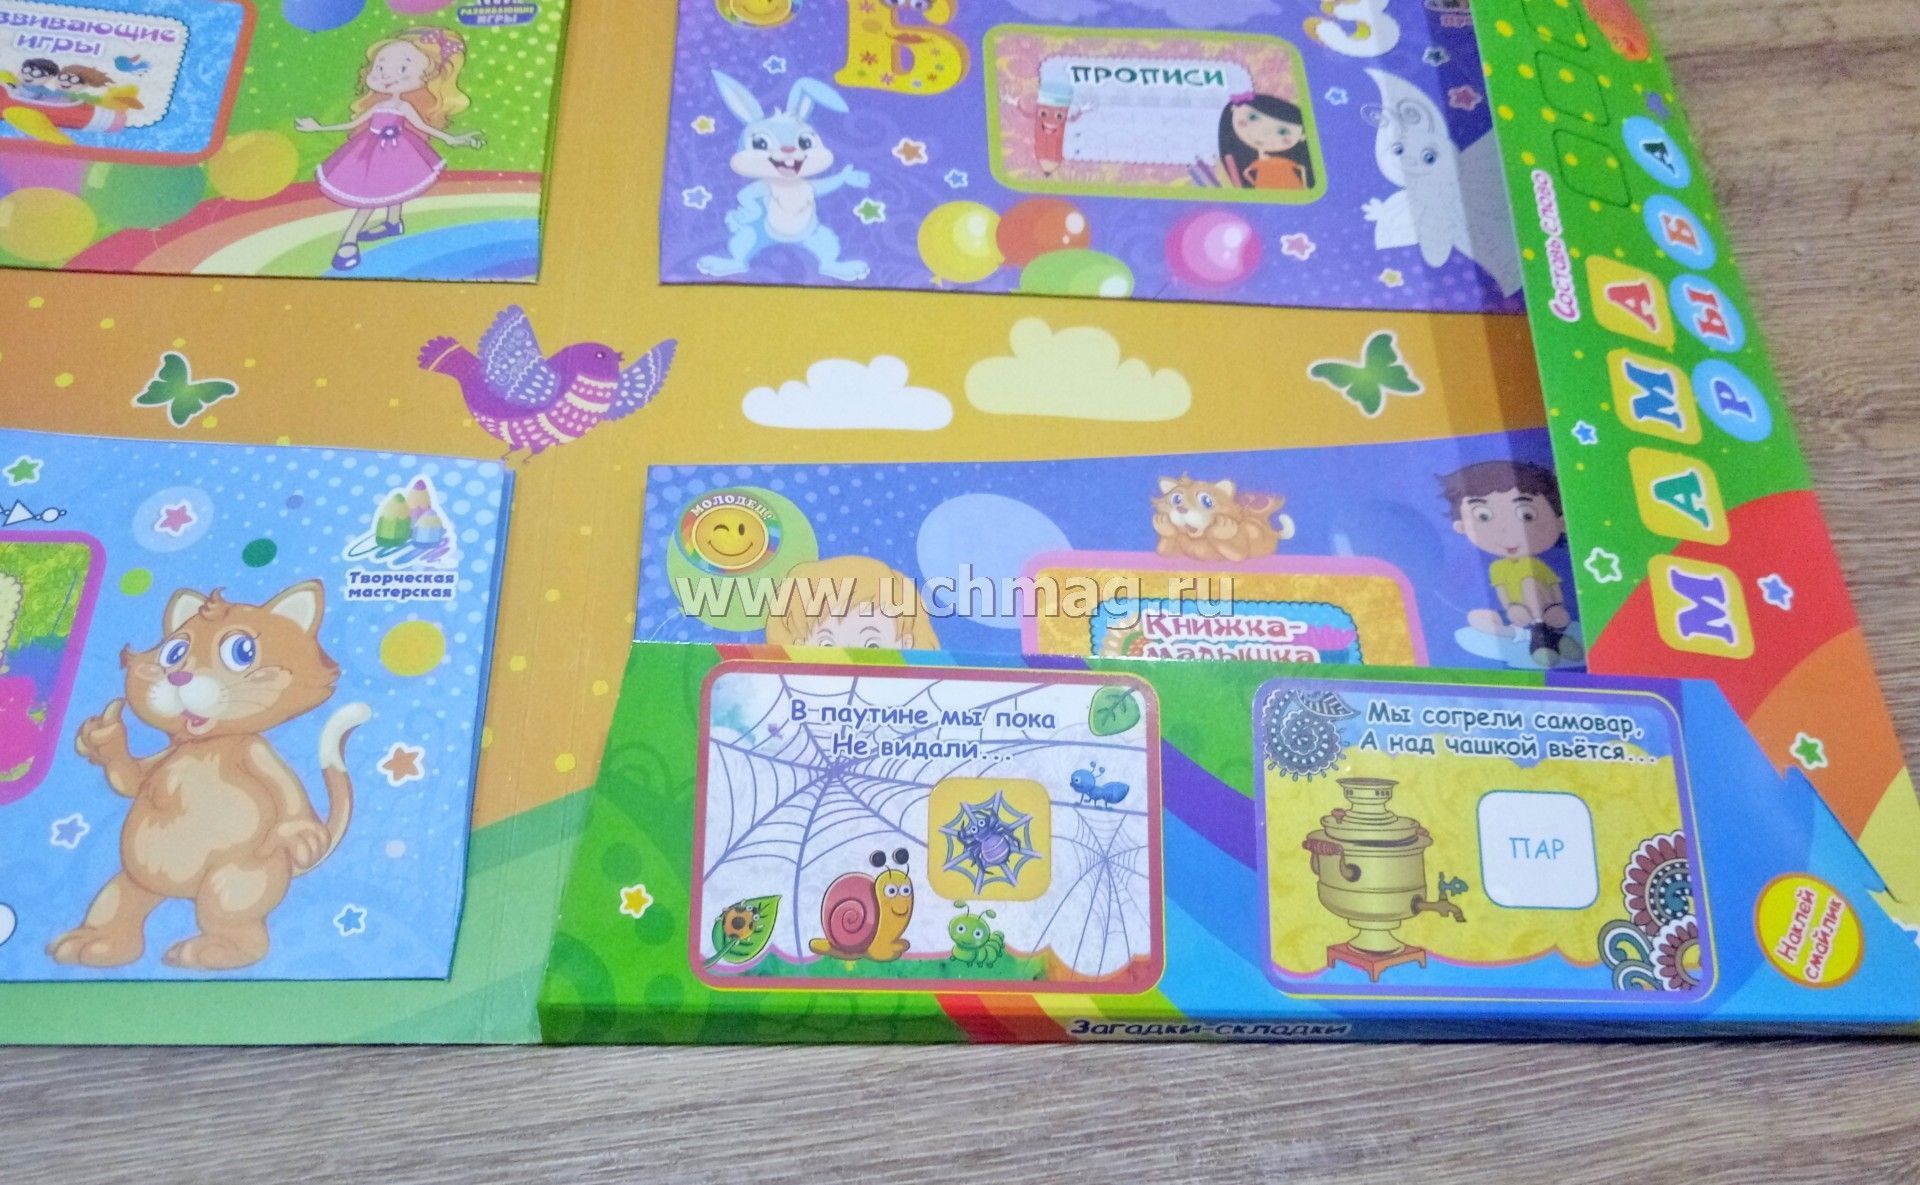 Лэпбук по сказкам для дошкольников: как сделать своими руками с помощью шаблонов